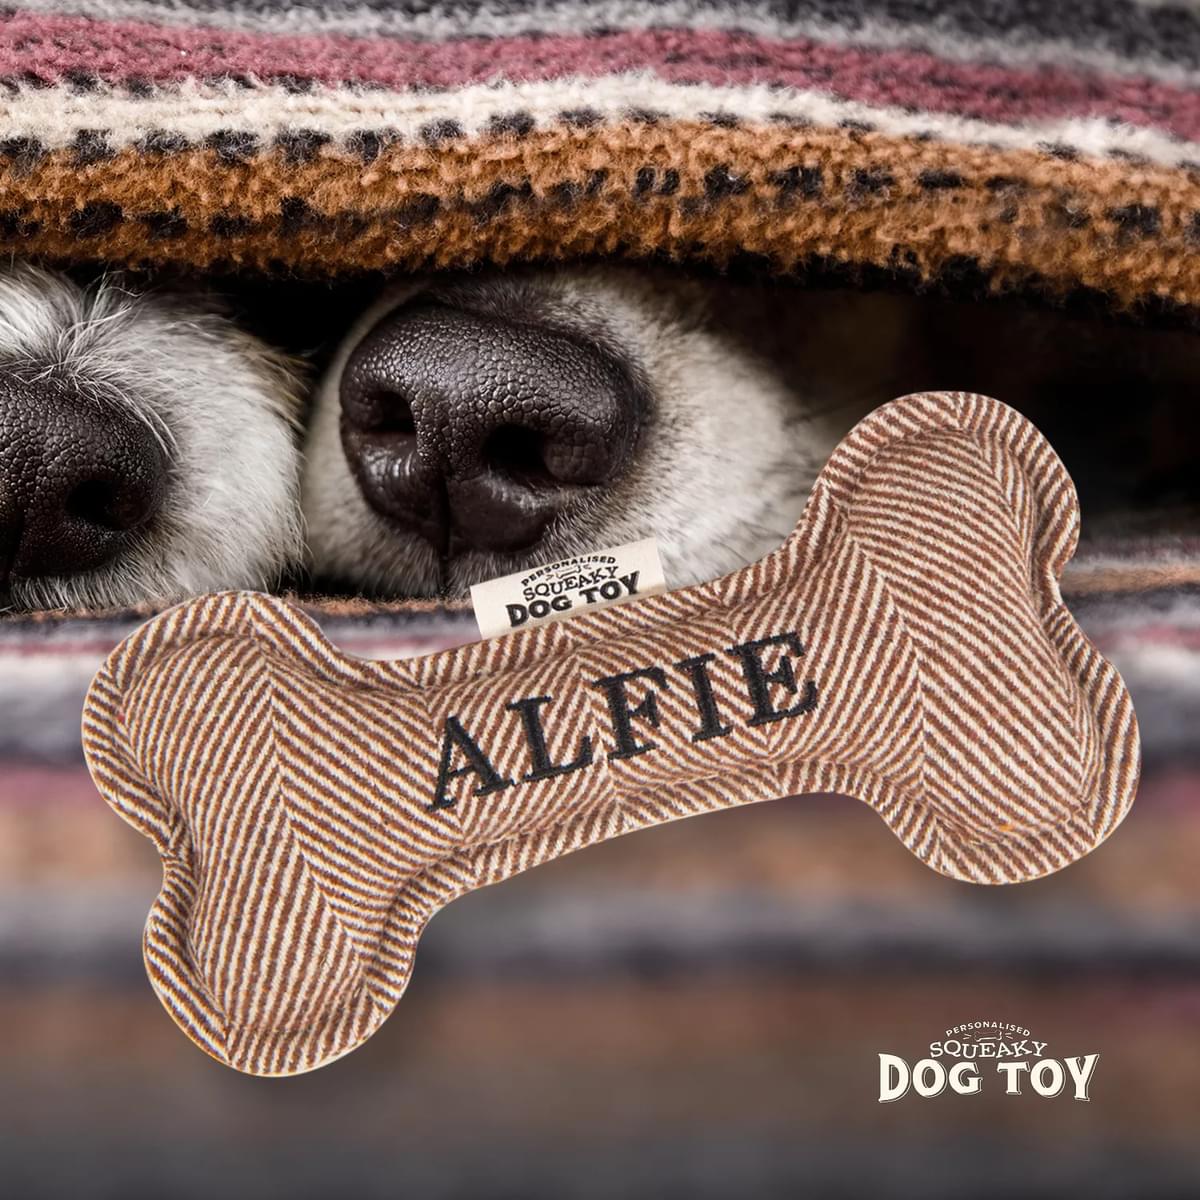 Named Squeaky Dog Toy- Alfie. Bone shaped herringbone tweed pattern dog toy. 